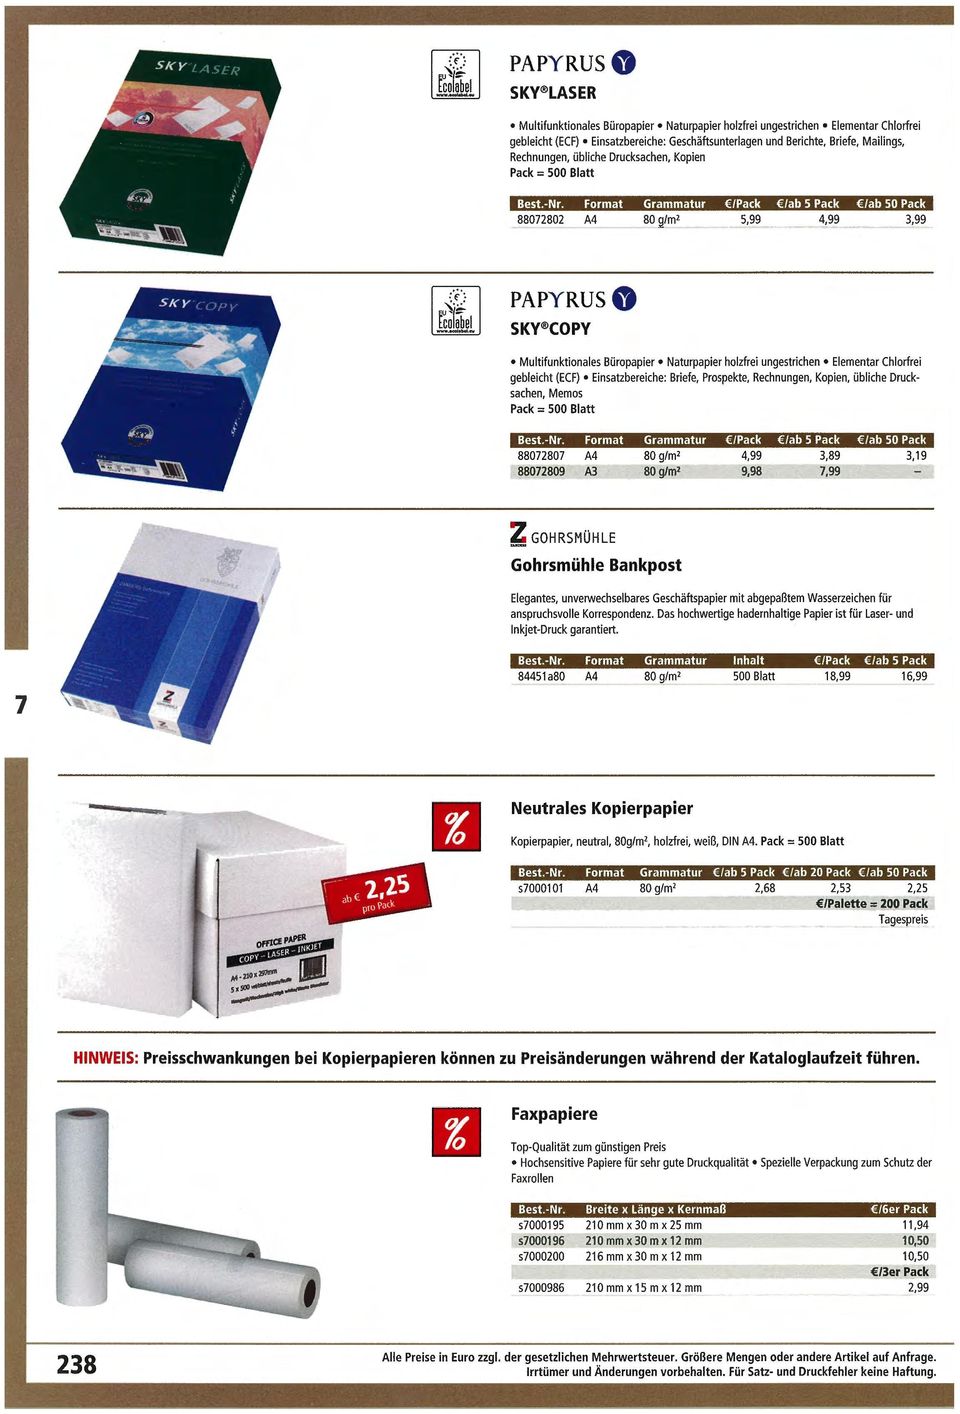 Format Grammatur /Pack /ab 5 Pack /ab 50 Pack 8802802 A4 80 g/m 2 5,99 4,99 3,99 PAPY RUS 0 SKV COPY Multifunktionales Büropapier Naturpapier holzfrei ungestrichen Elementar Chlorfrei gebleicht (ECF)